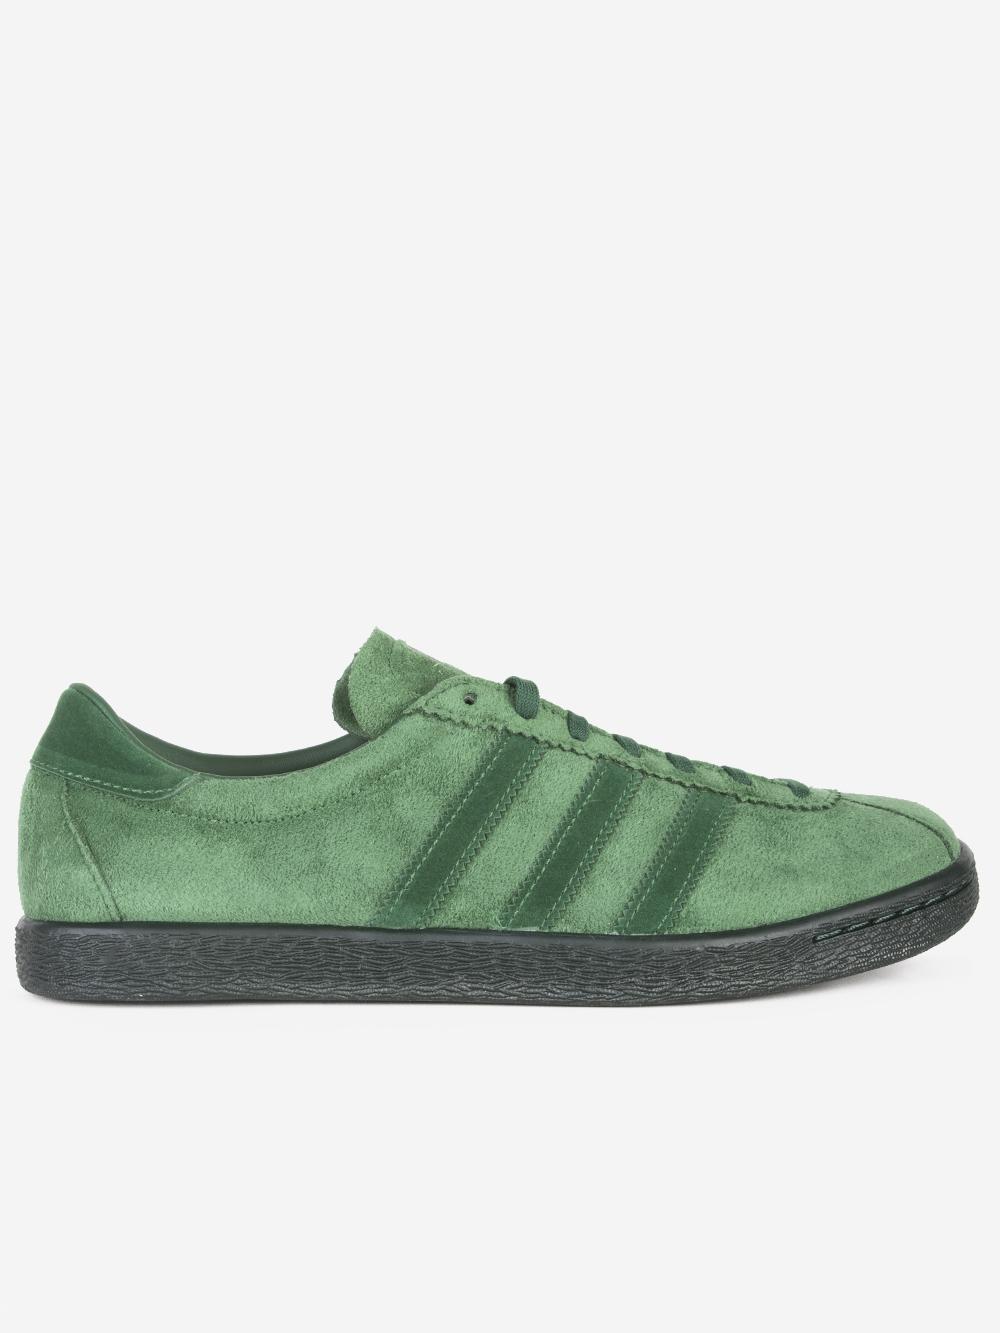 adidas Originals Tobacco Gruen Sneakers in Green for Men | Lyst